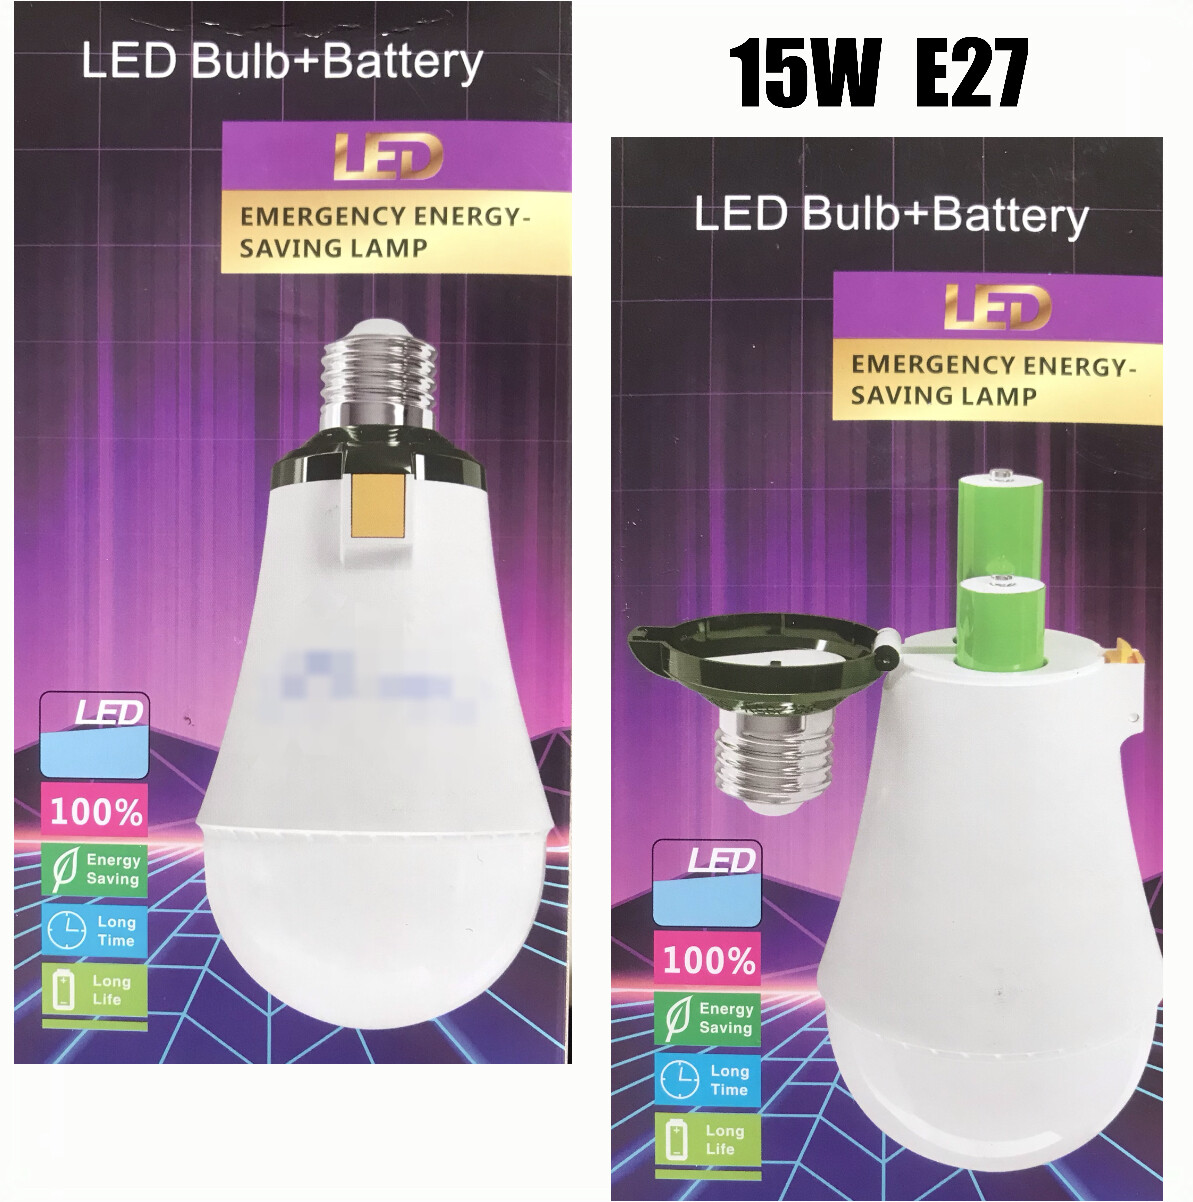 LED Bulb+Battery 15W